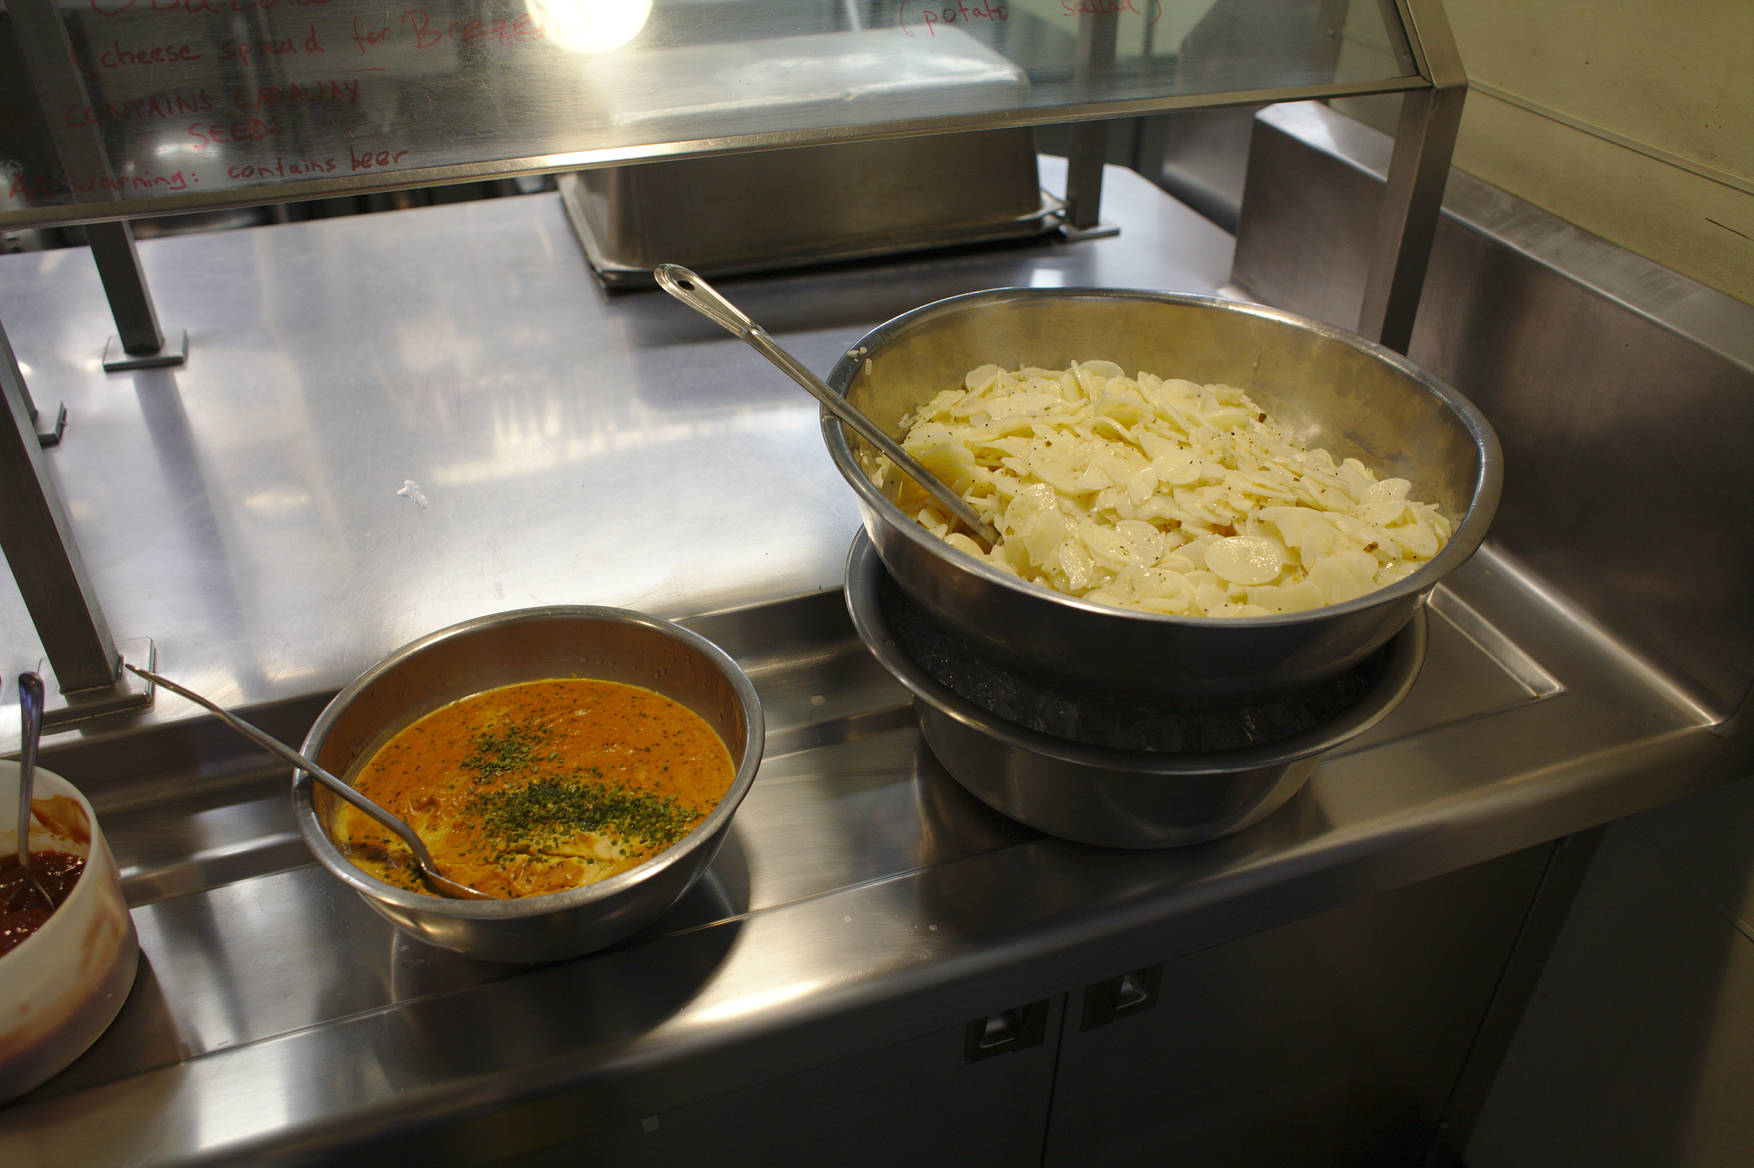 Side dishes: Obazda, Kartoffelsalat